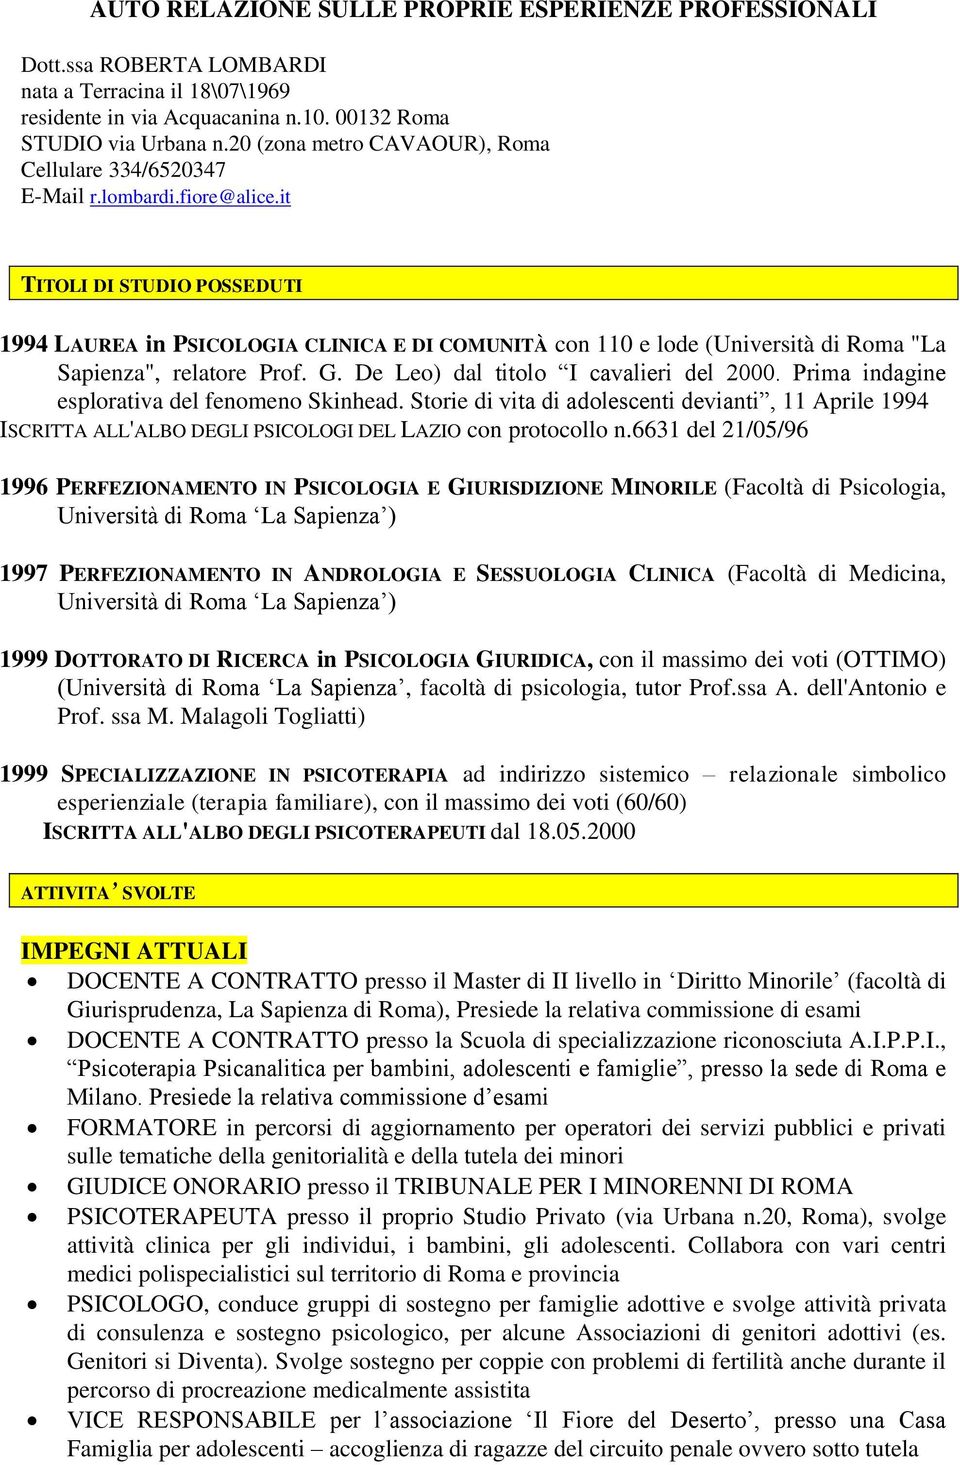 it TITOLI DI STUDIO POSSEDUTI 1994 LAUREA in PSICOLOGIA CLINICA E DI COMUNITÀ cn 110 e lde (Università di Rma "La Sapienza", relatre Prf. G. De Le) dal titl I cavalieri del 2000.